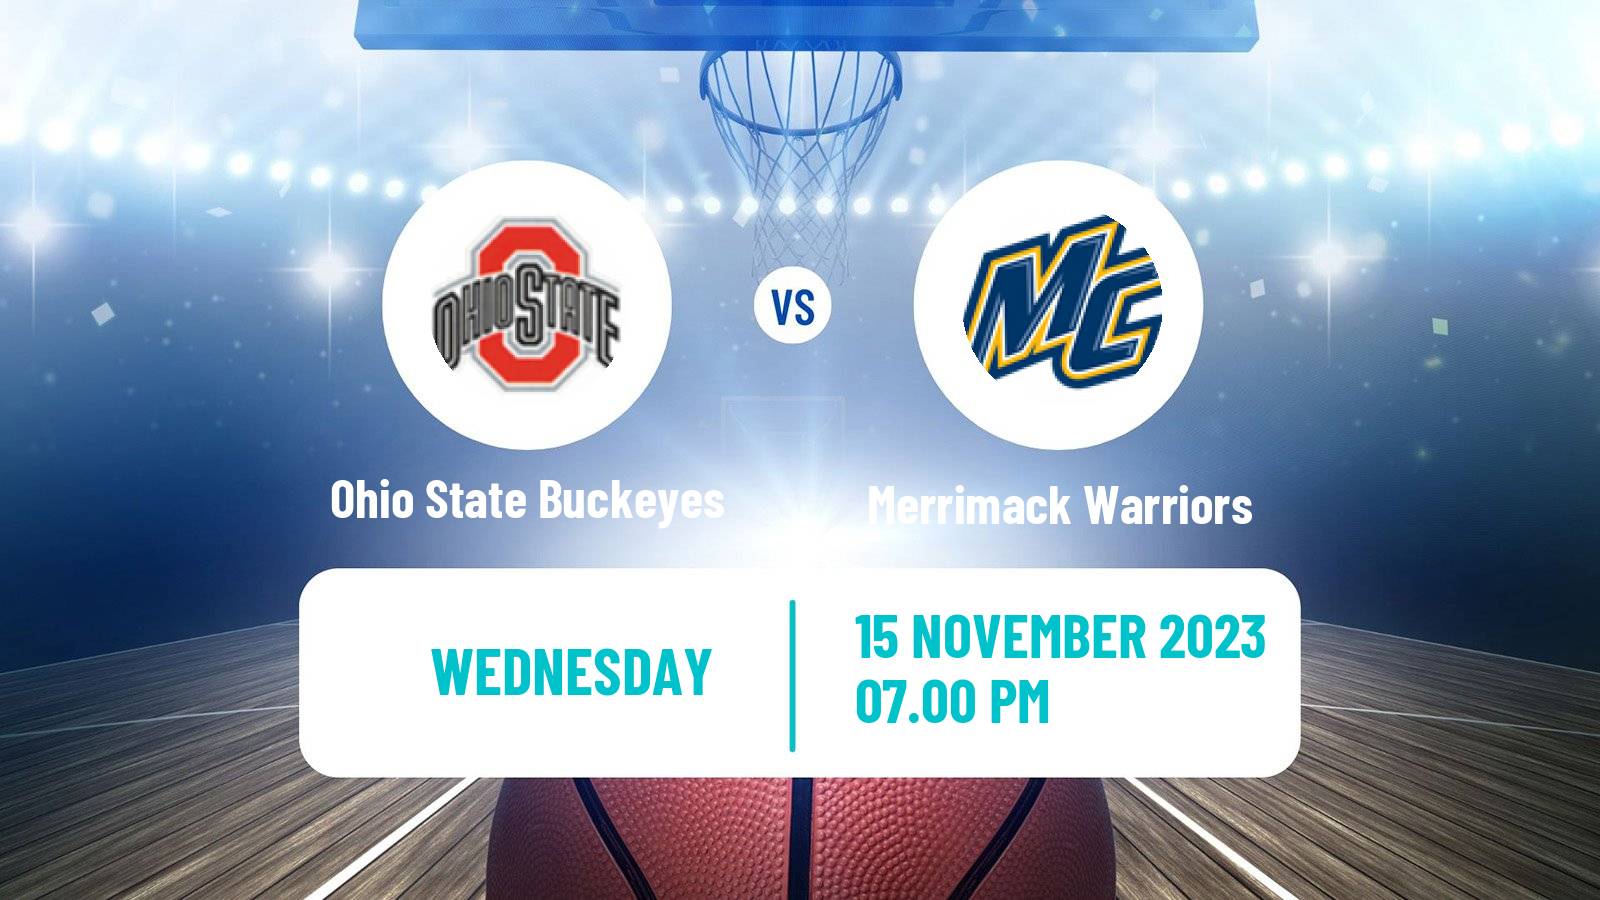 Basketball NCAA College Basketball Ohio State Buckeyes - Merrimack Warriors